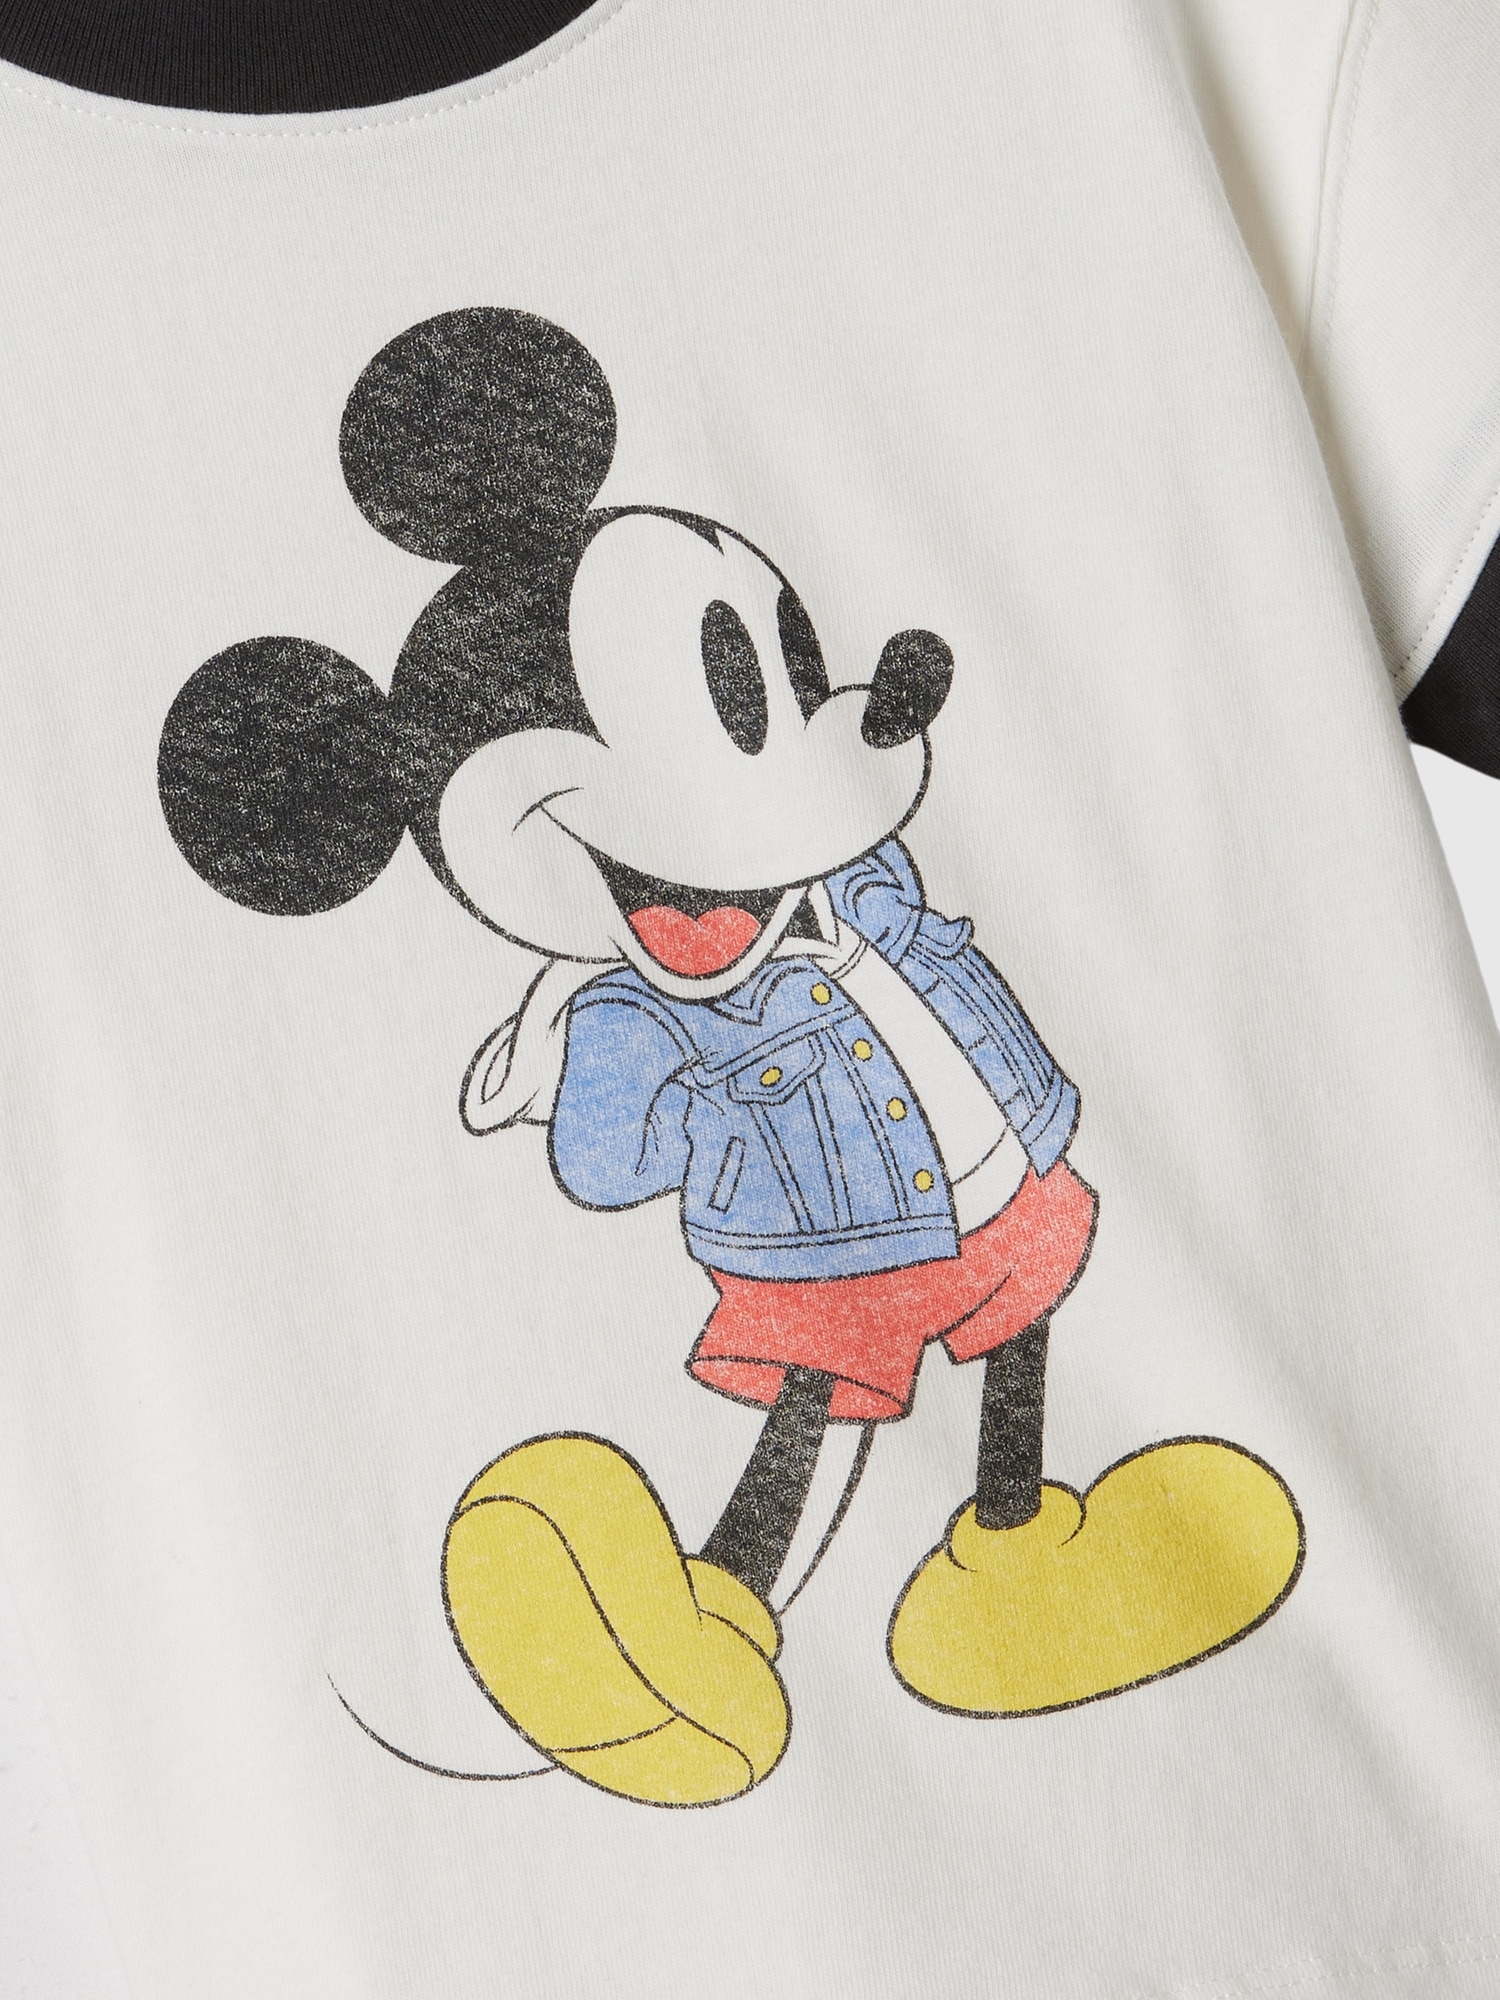 T-shirt à imprimé de Mickey Mouse | babyGap